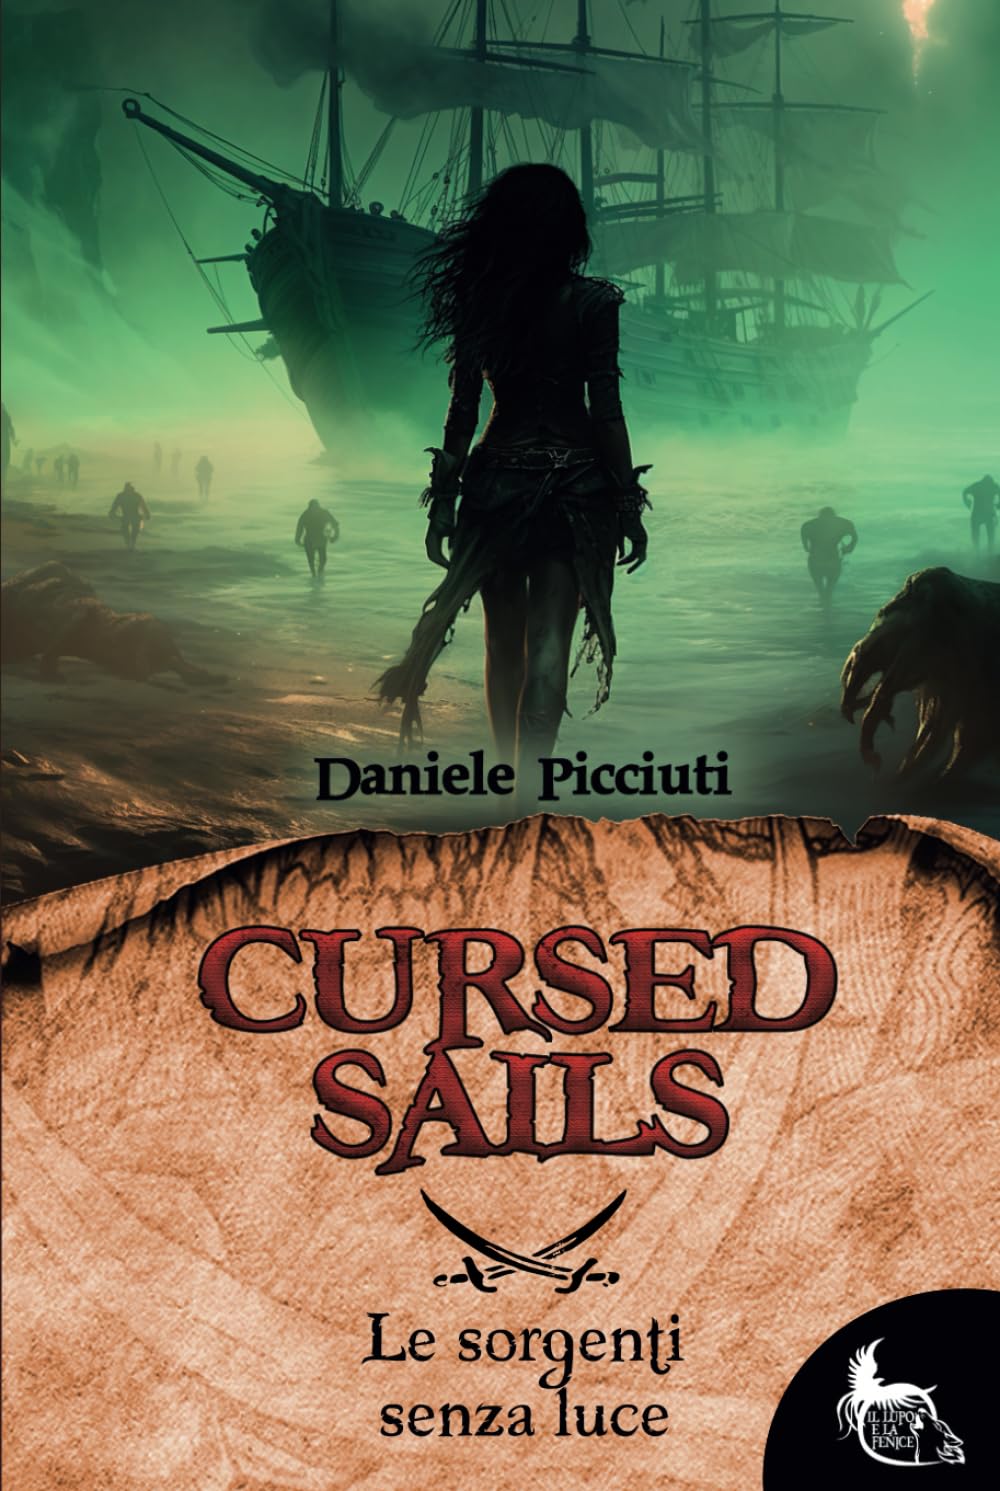 Cursed Sails, Daniele Picciuti, il Lupo e la Fenice